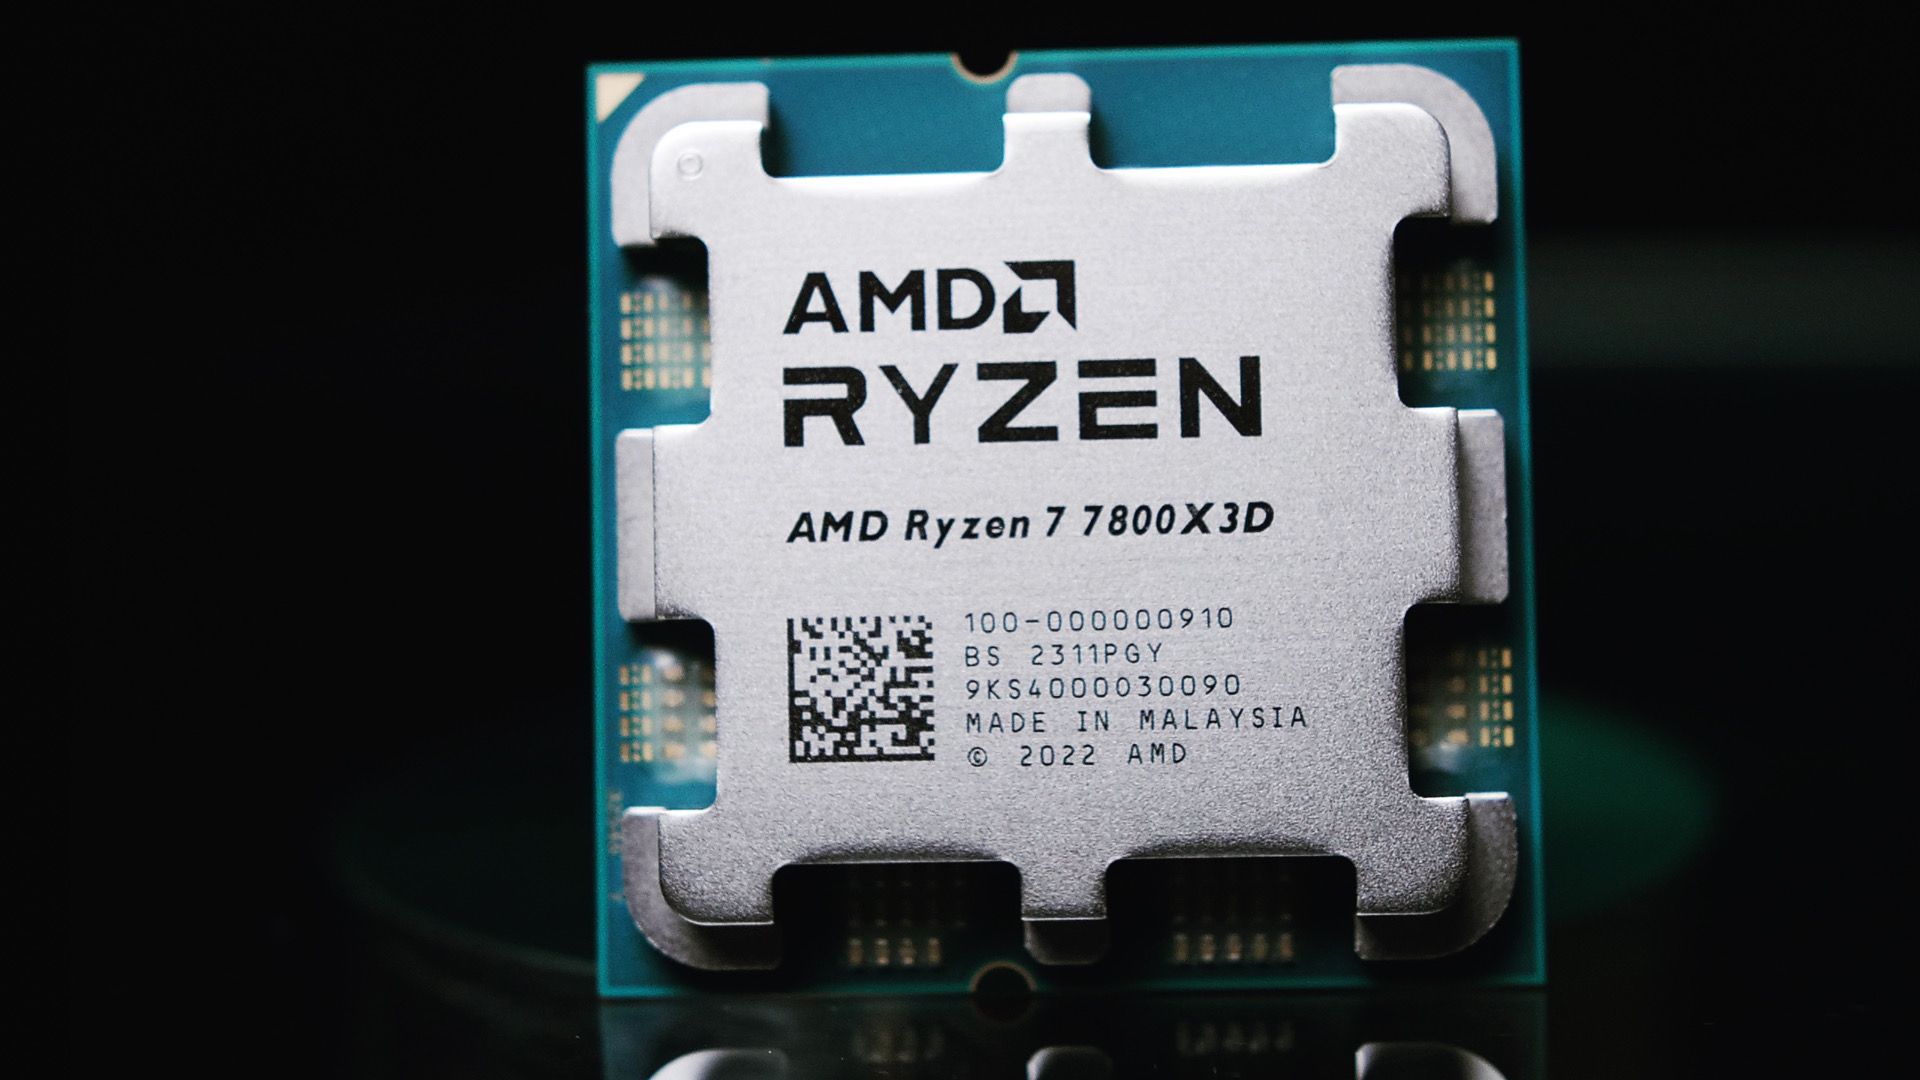 AMD Ryzen 7 7800X3D - Best high-end gaming CPU